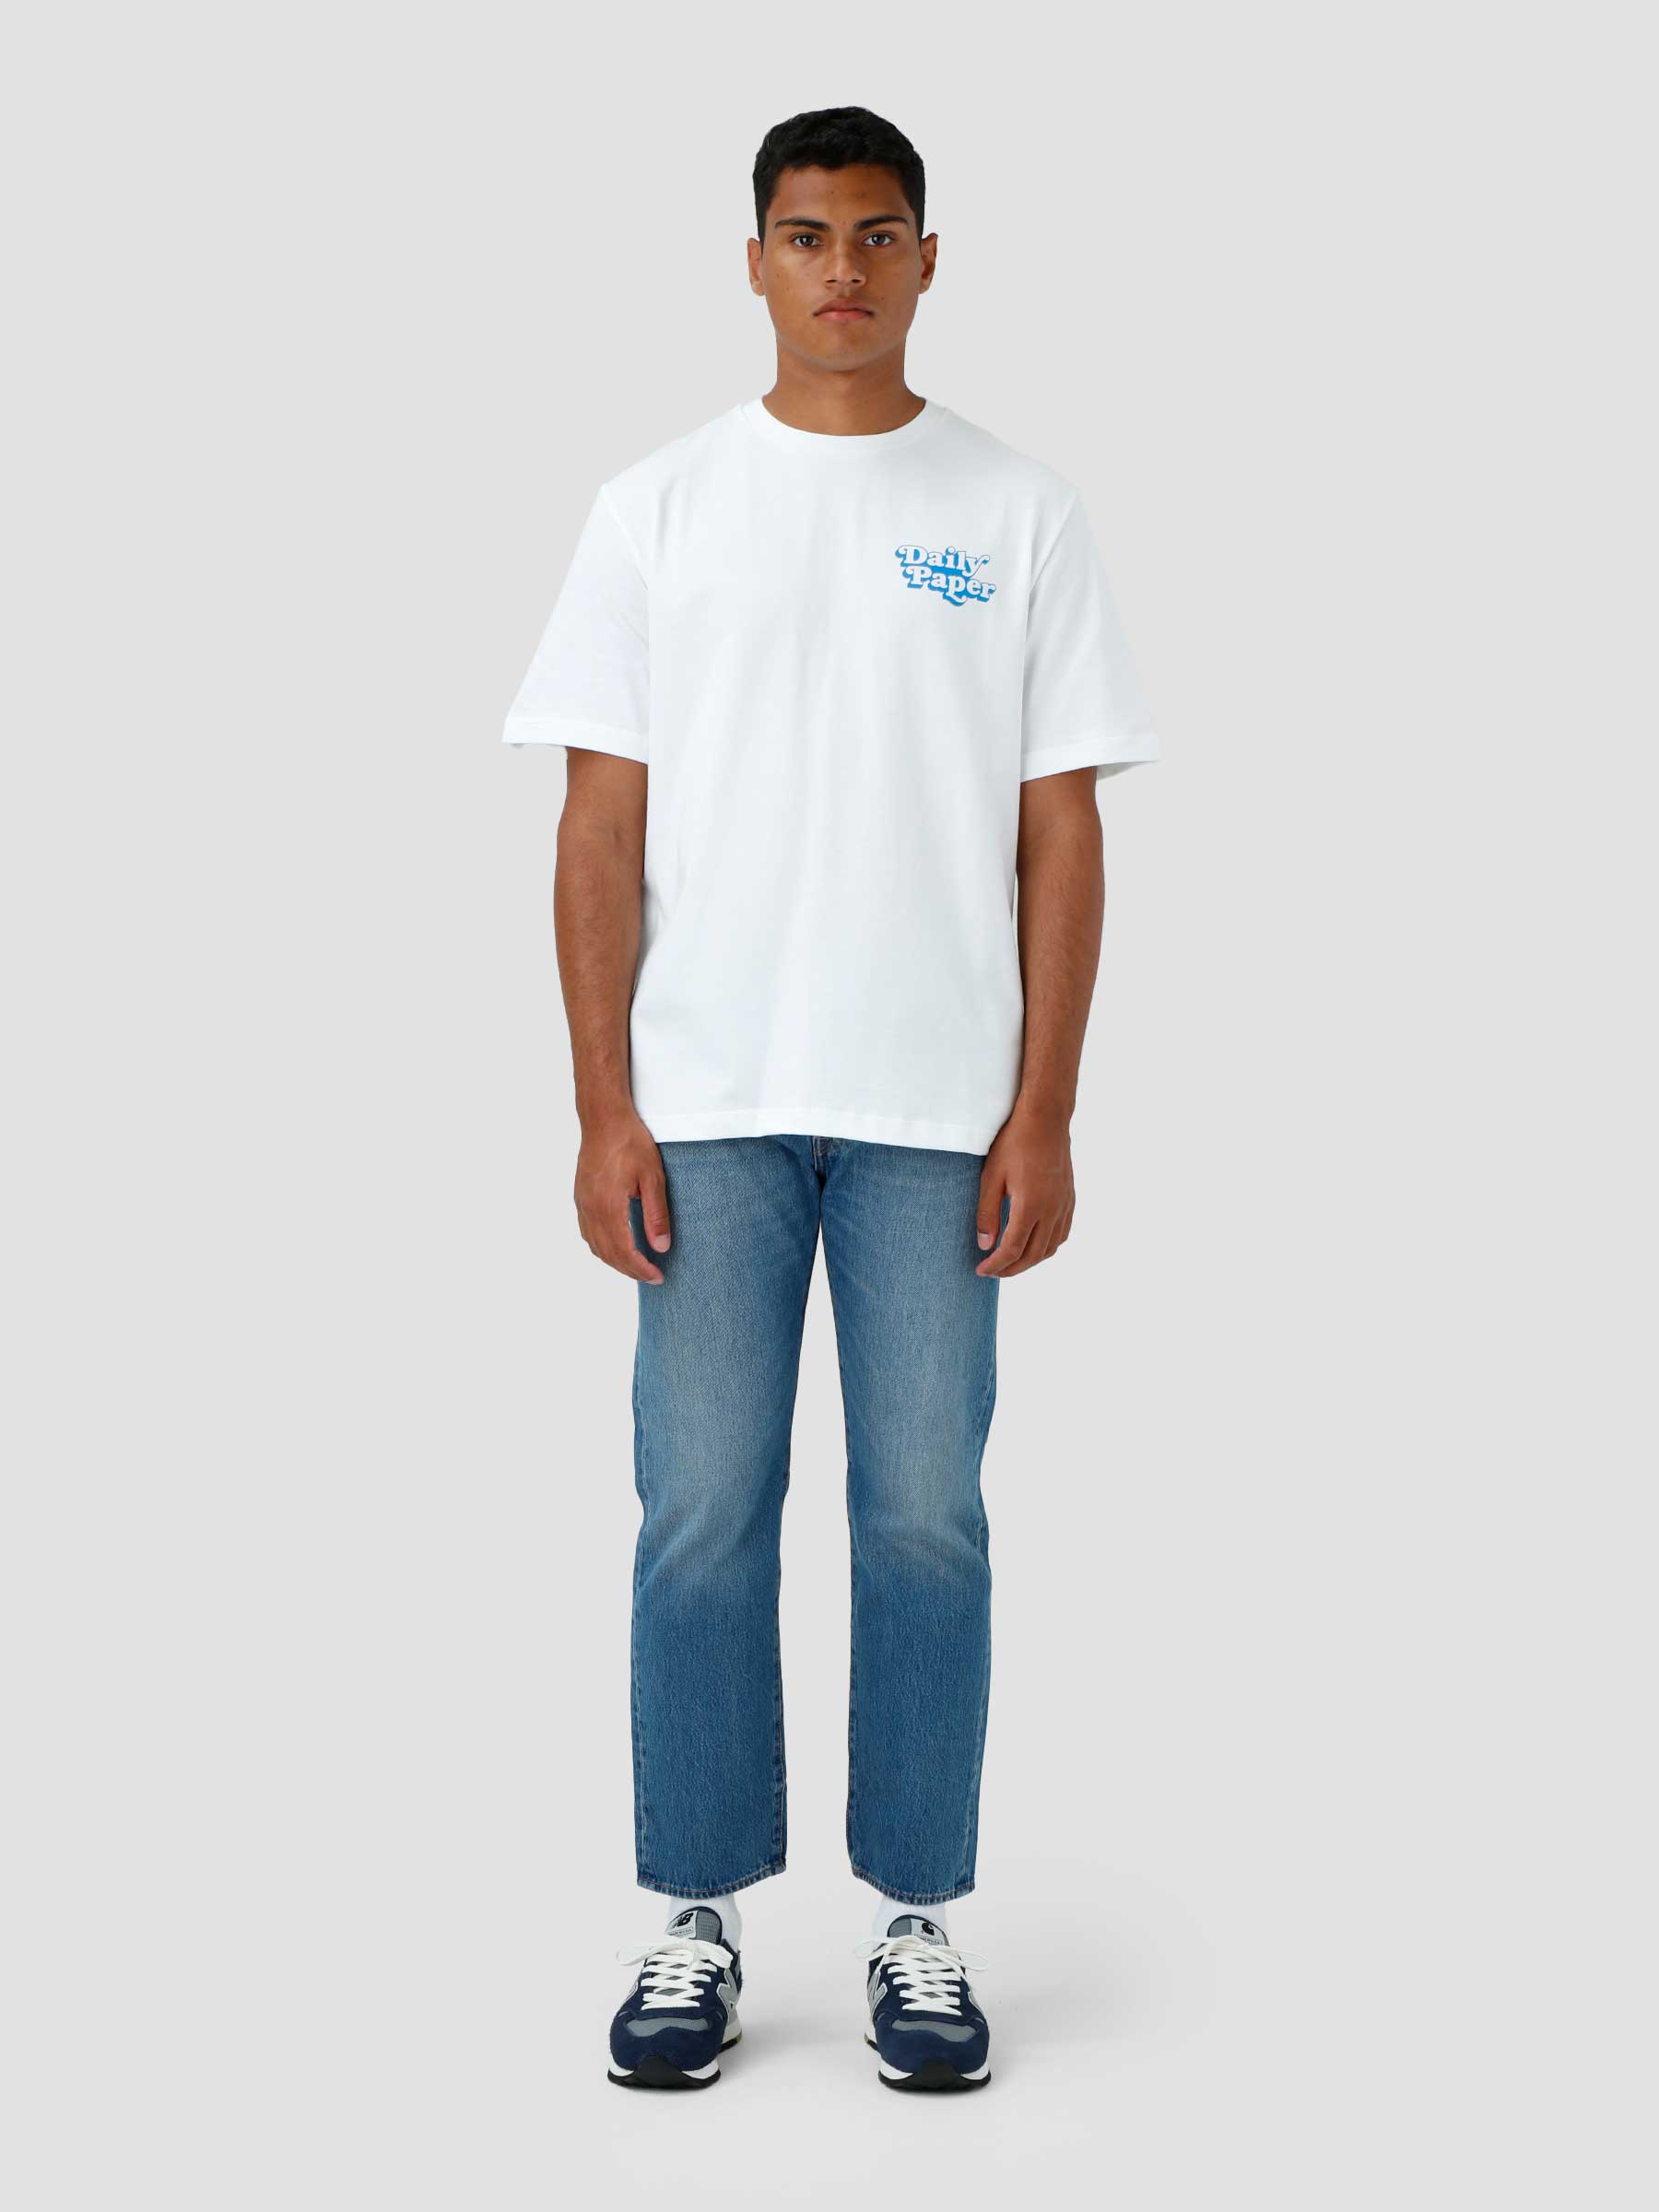 Najeeb T-shirt White 2221072